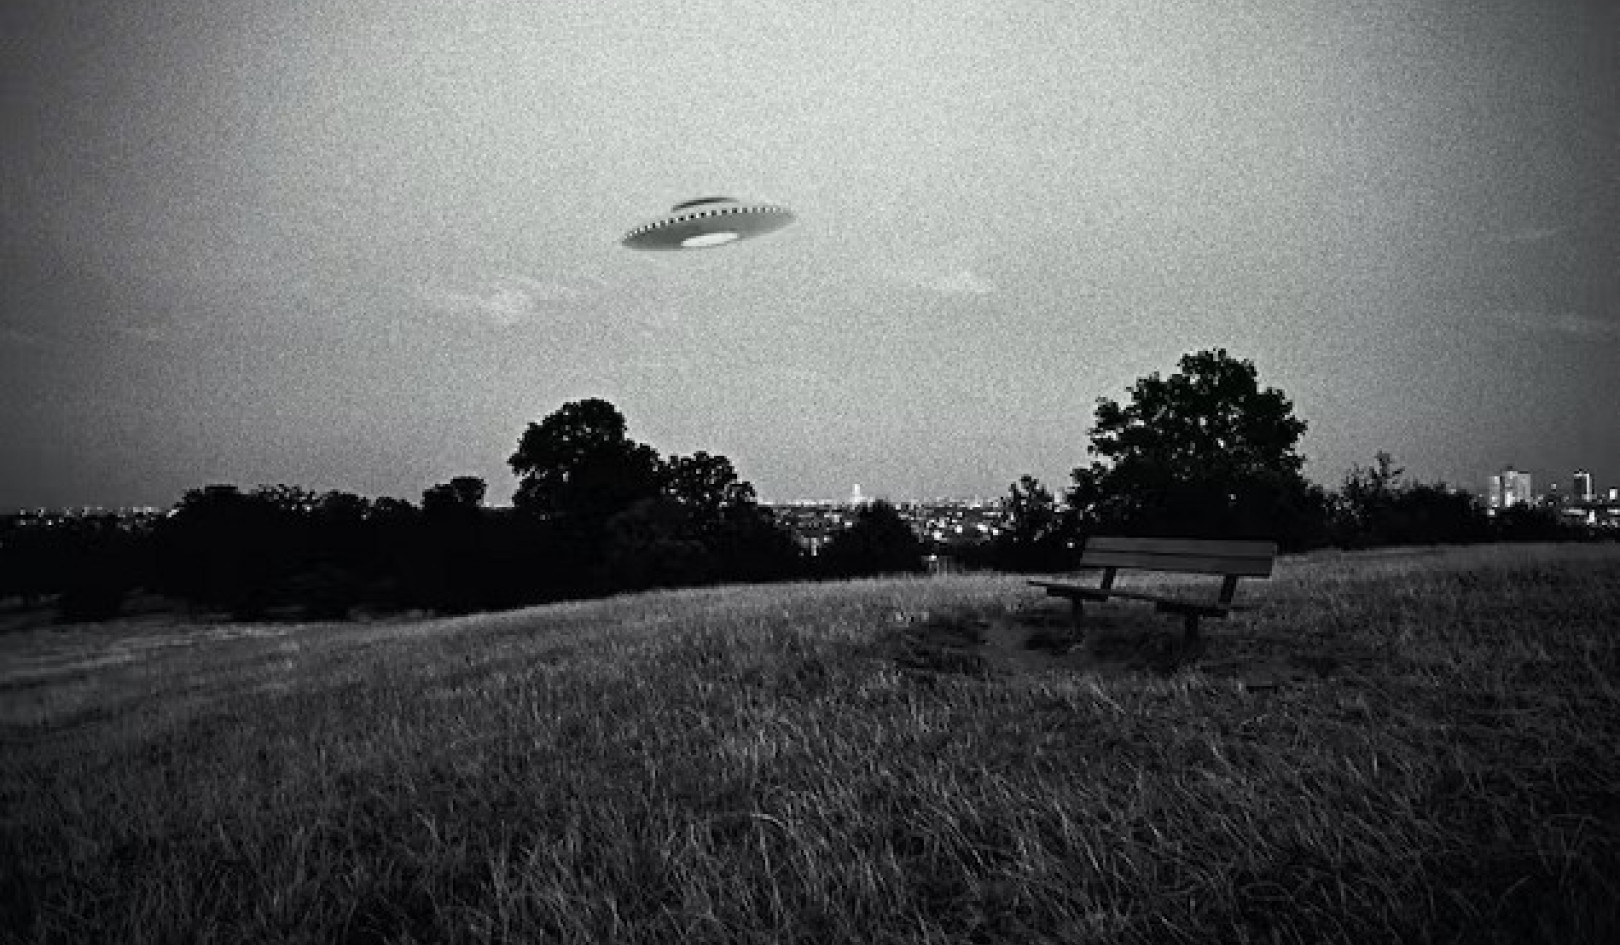 Hvorfor folk har en tendens til at tro, at ufoer er udenjordiske